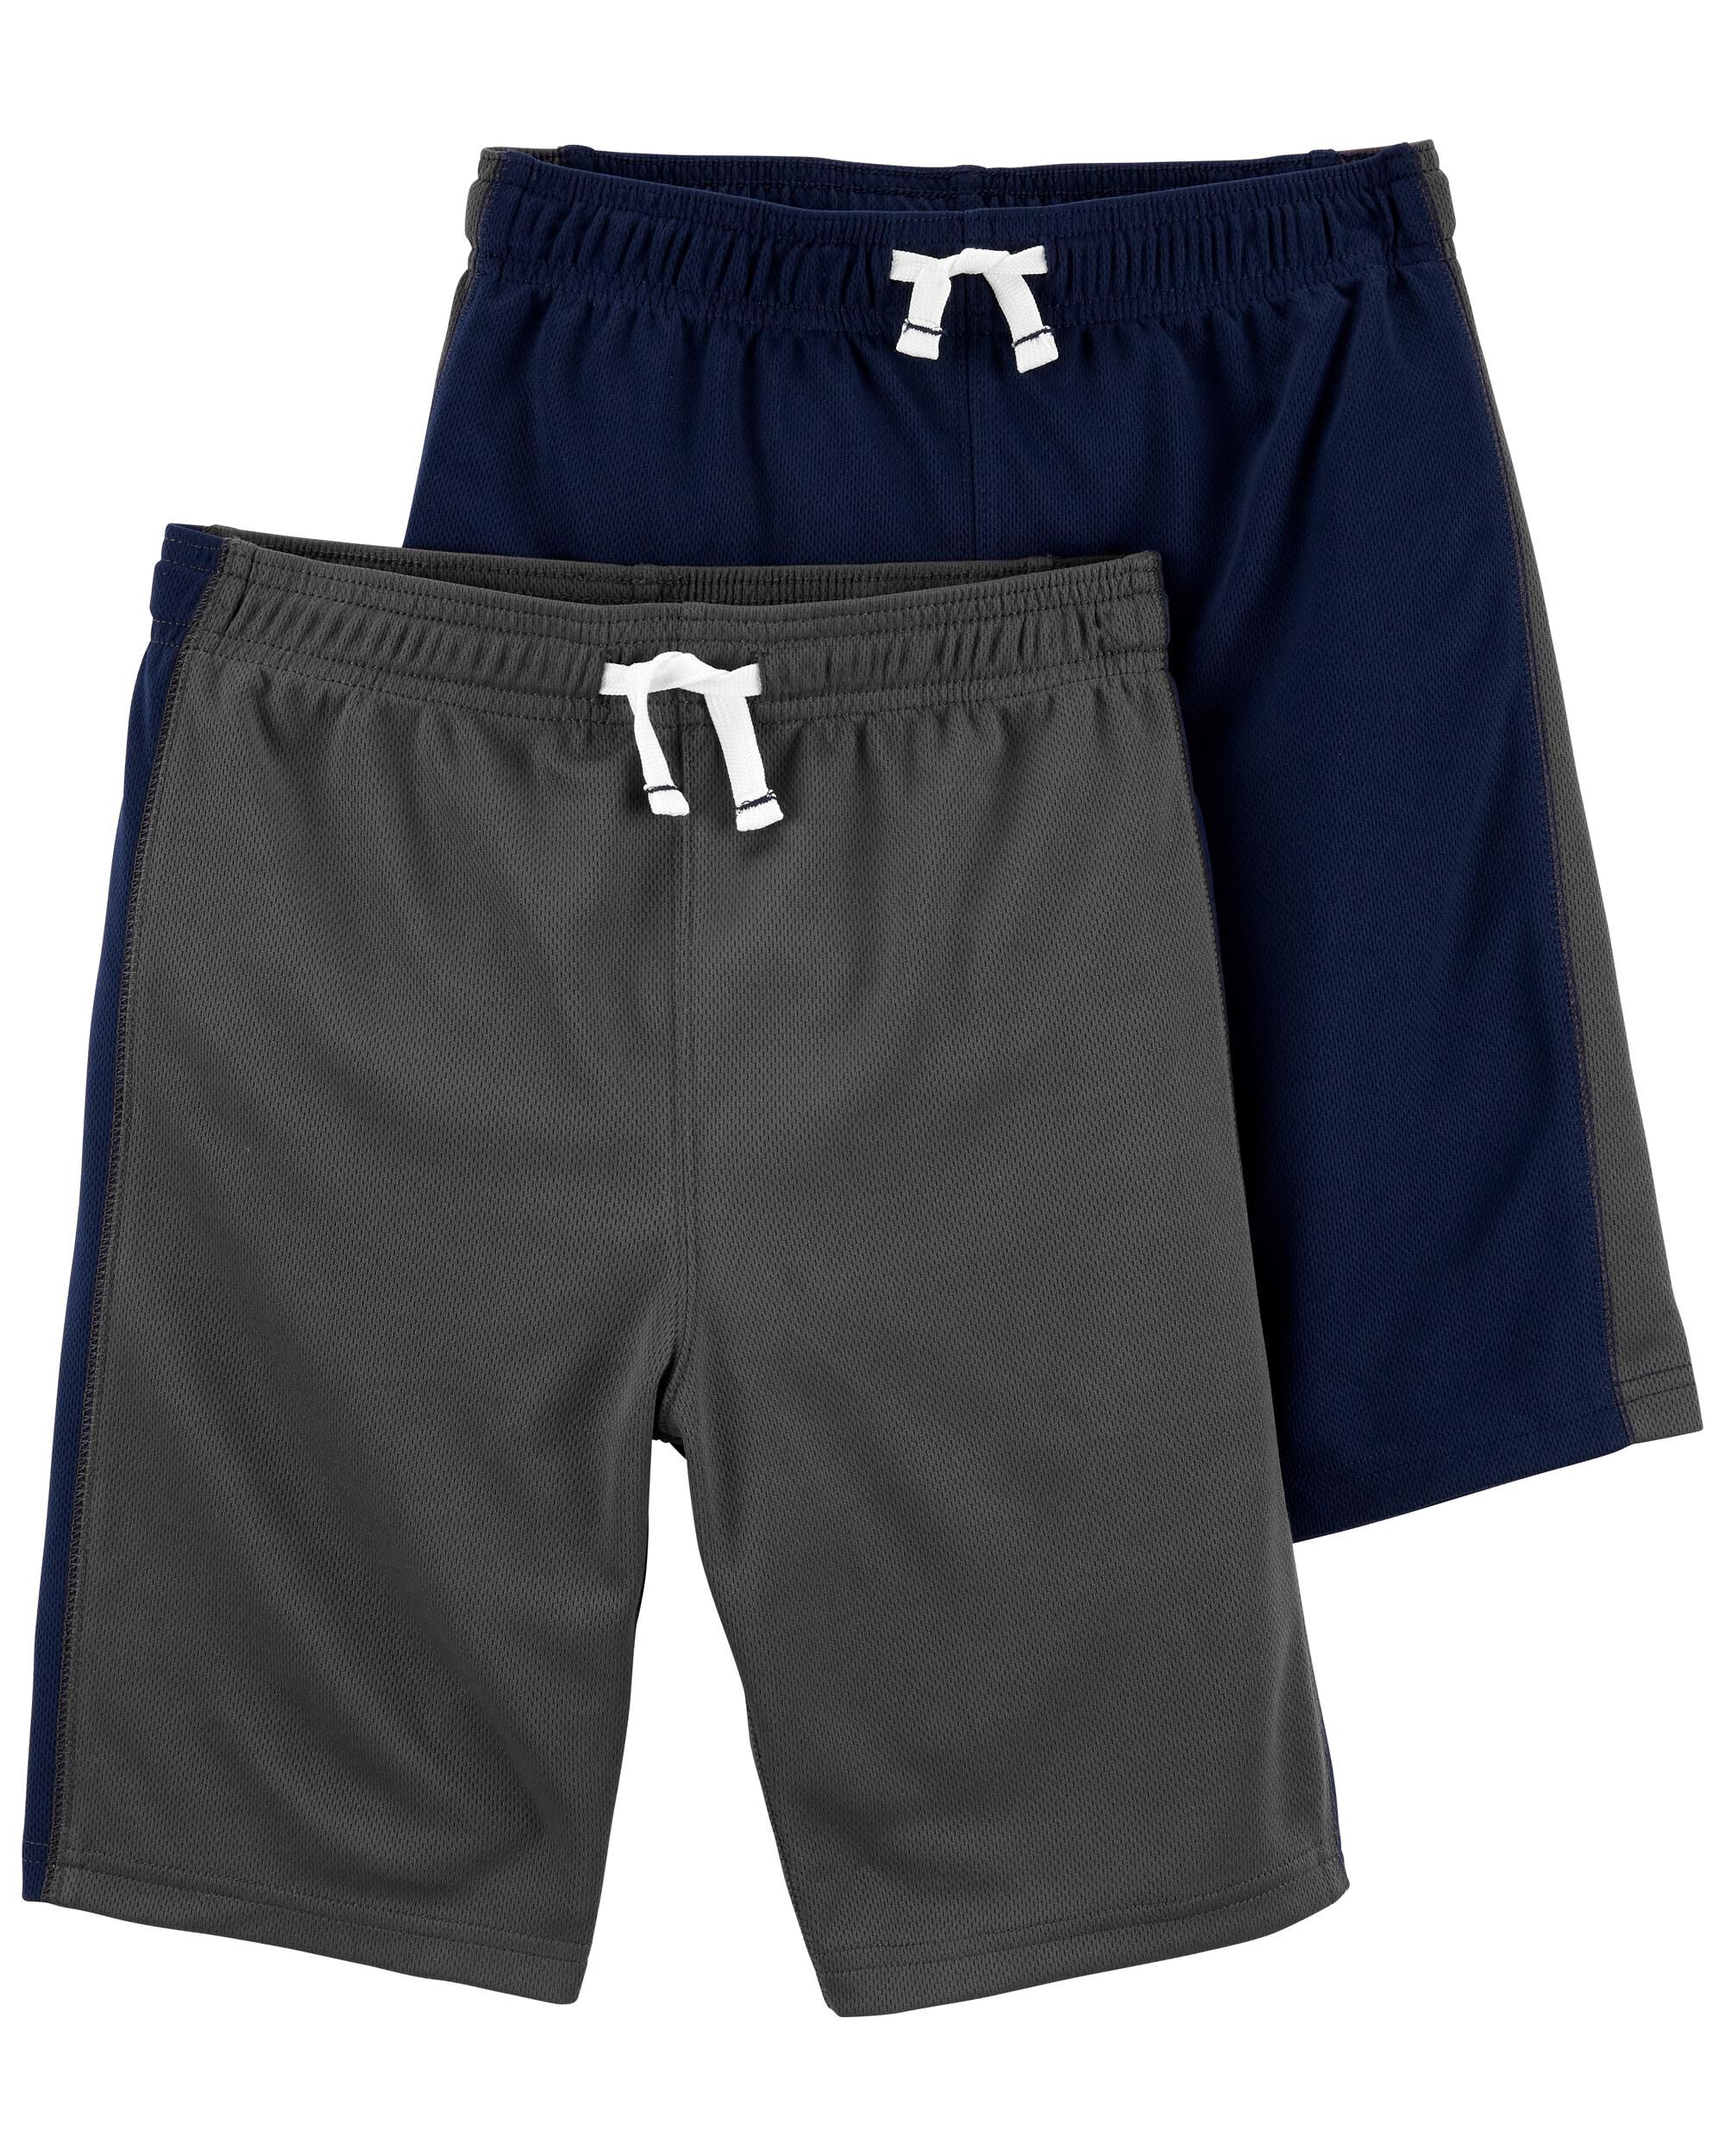 NWT Oshkosh Boy Camo Active Shorts Varies shade of gray 4,5,6,7,10/12